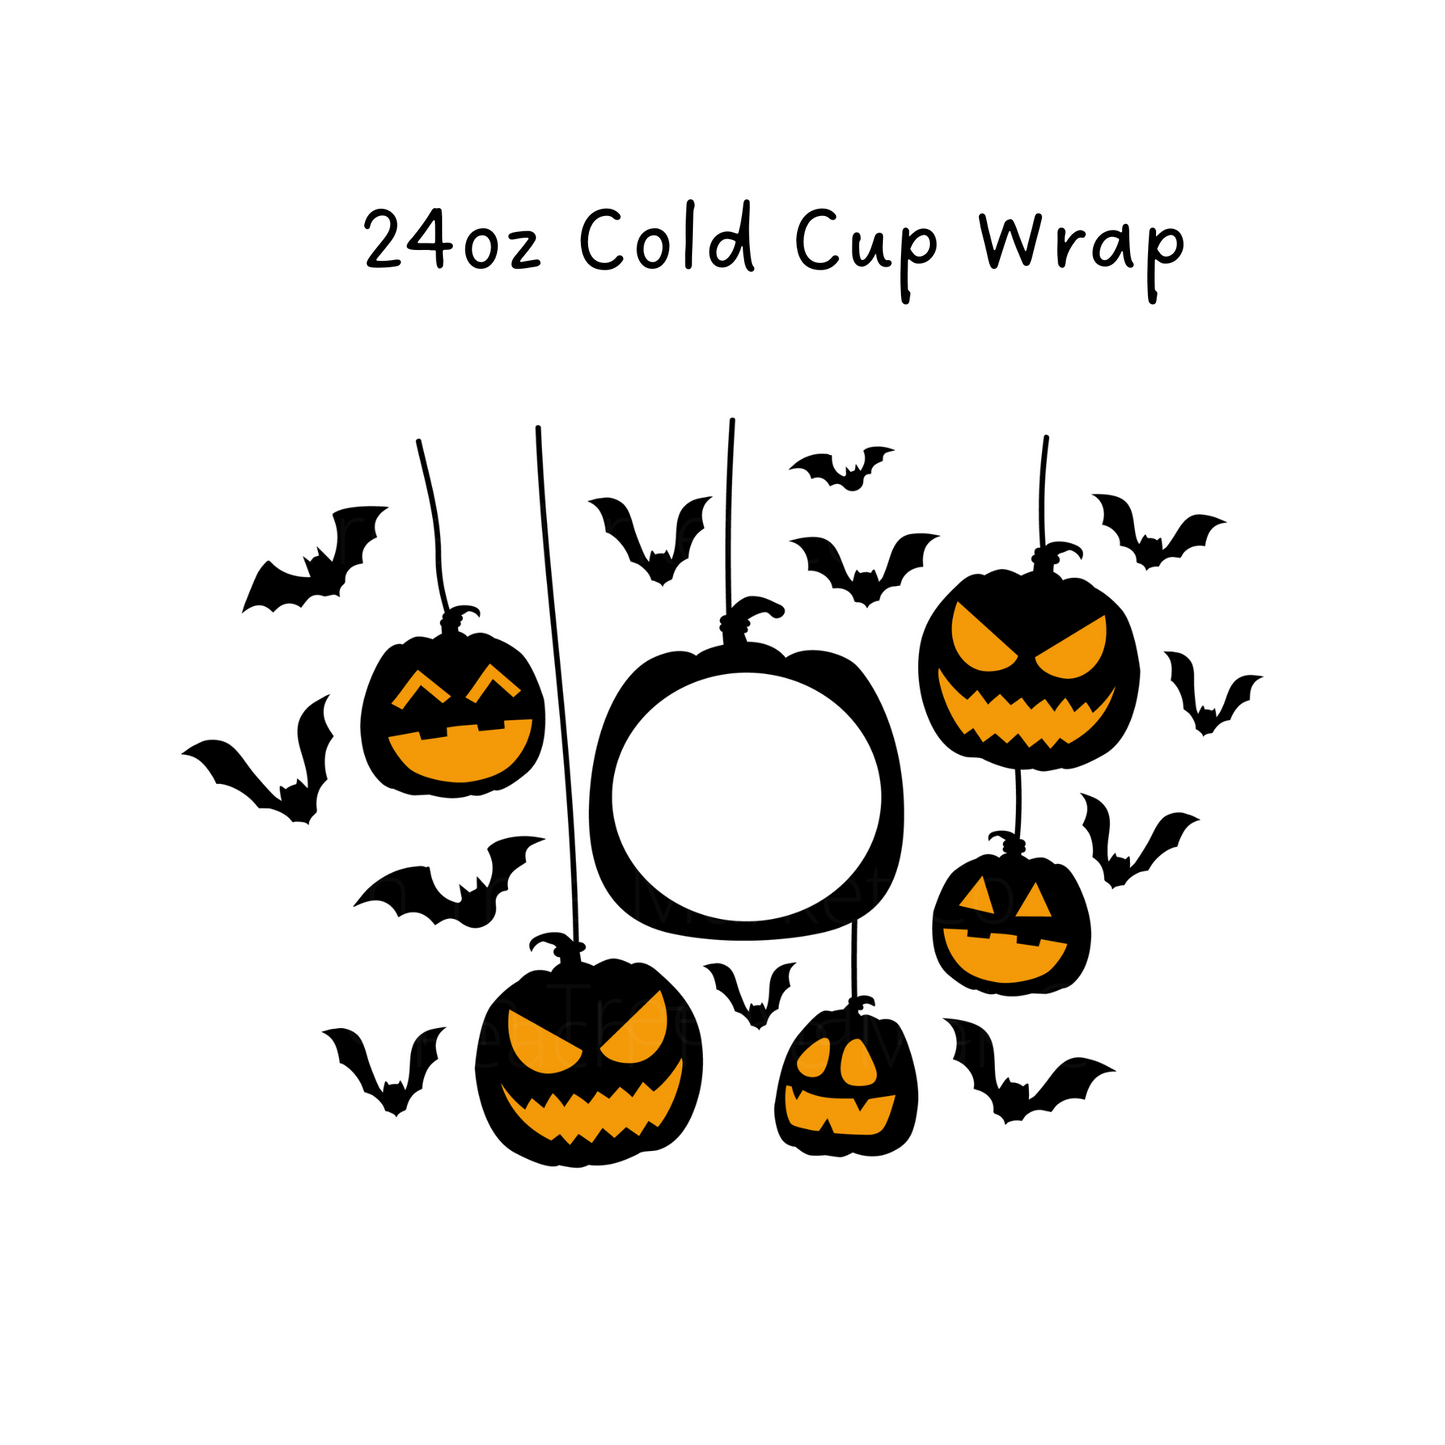 Bats and Pumpkins 24 OZ Cold Cup Wrap